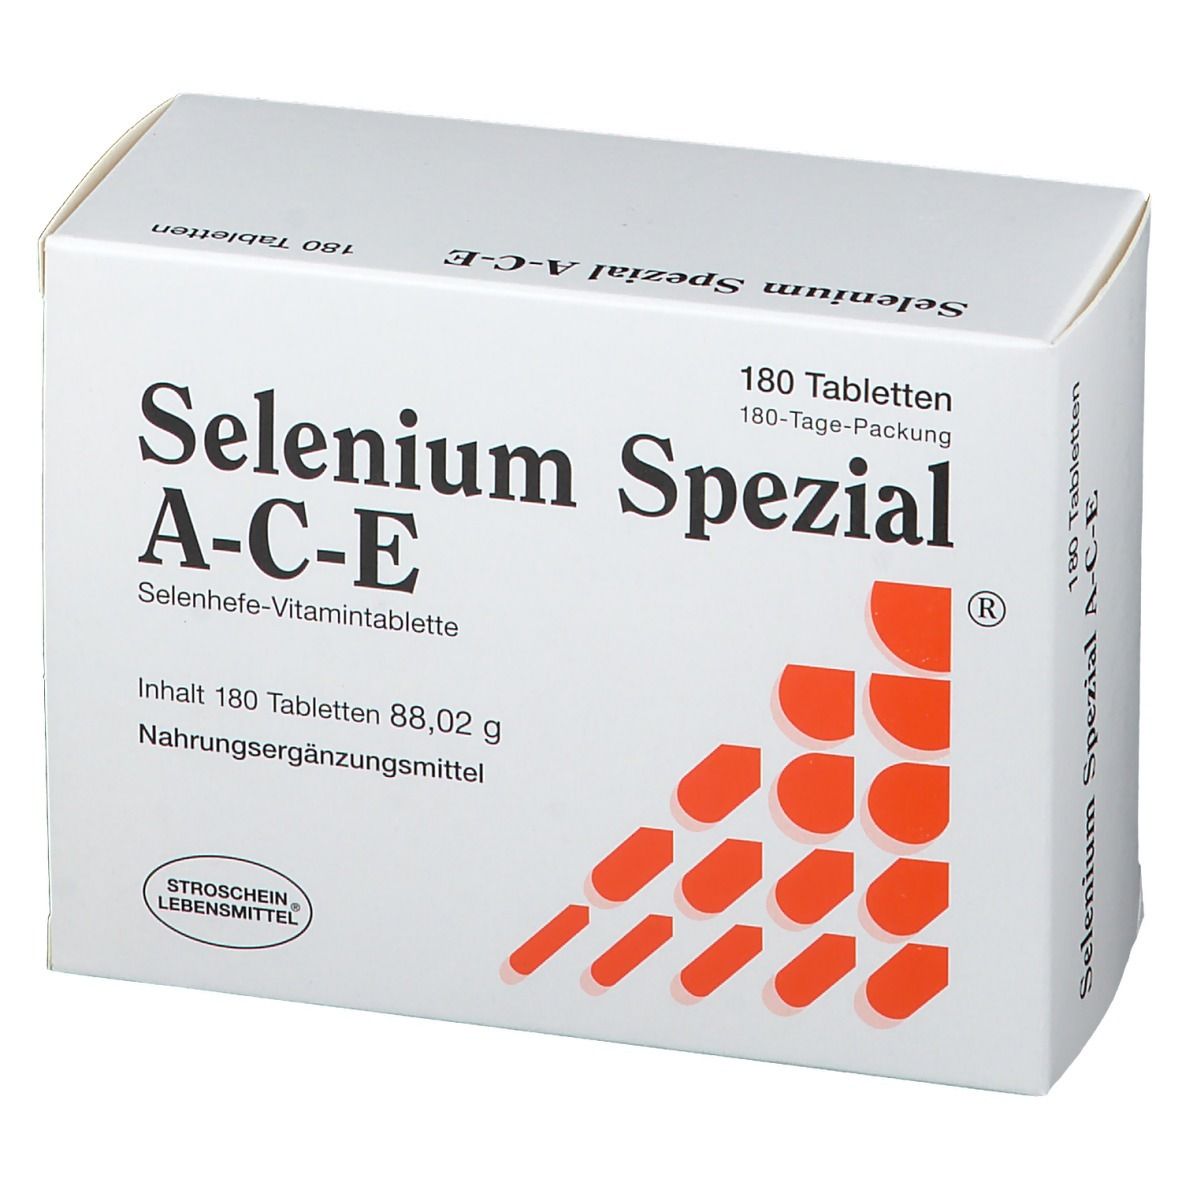 Selenium Spezial Ace